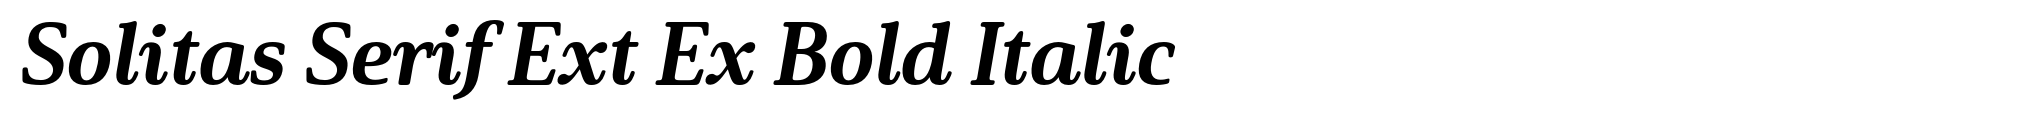 Solitas Serif Ext Ex Bold Italic image